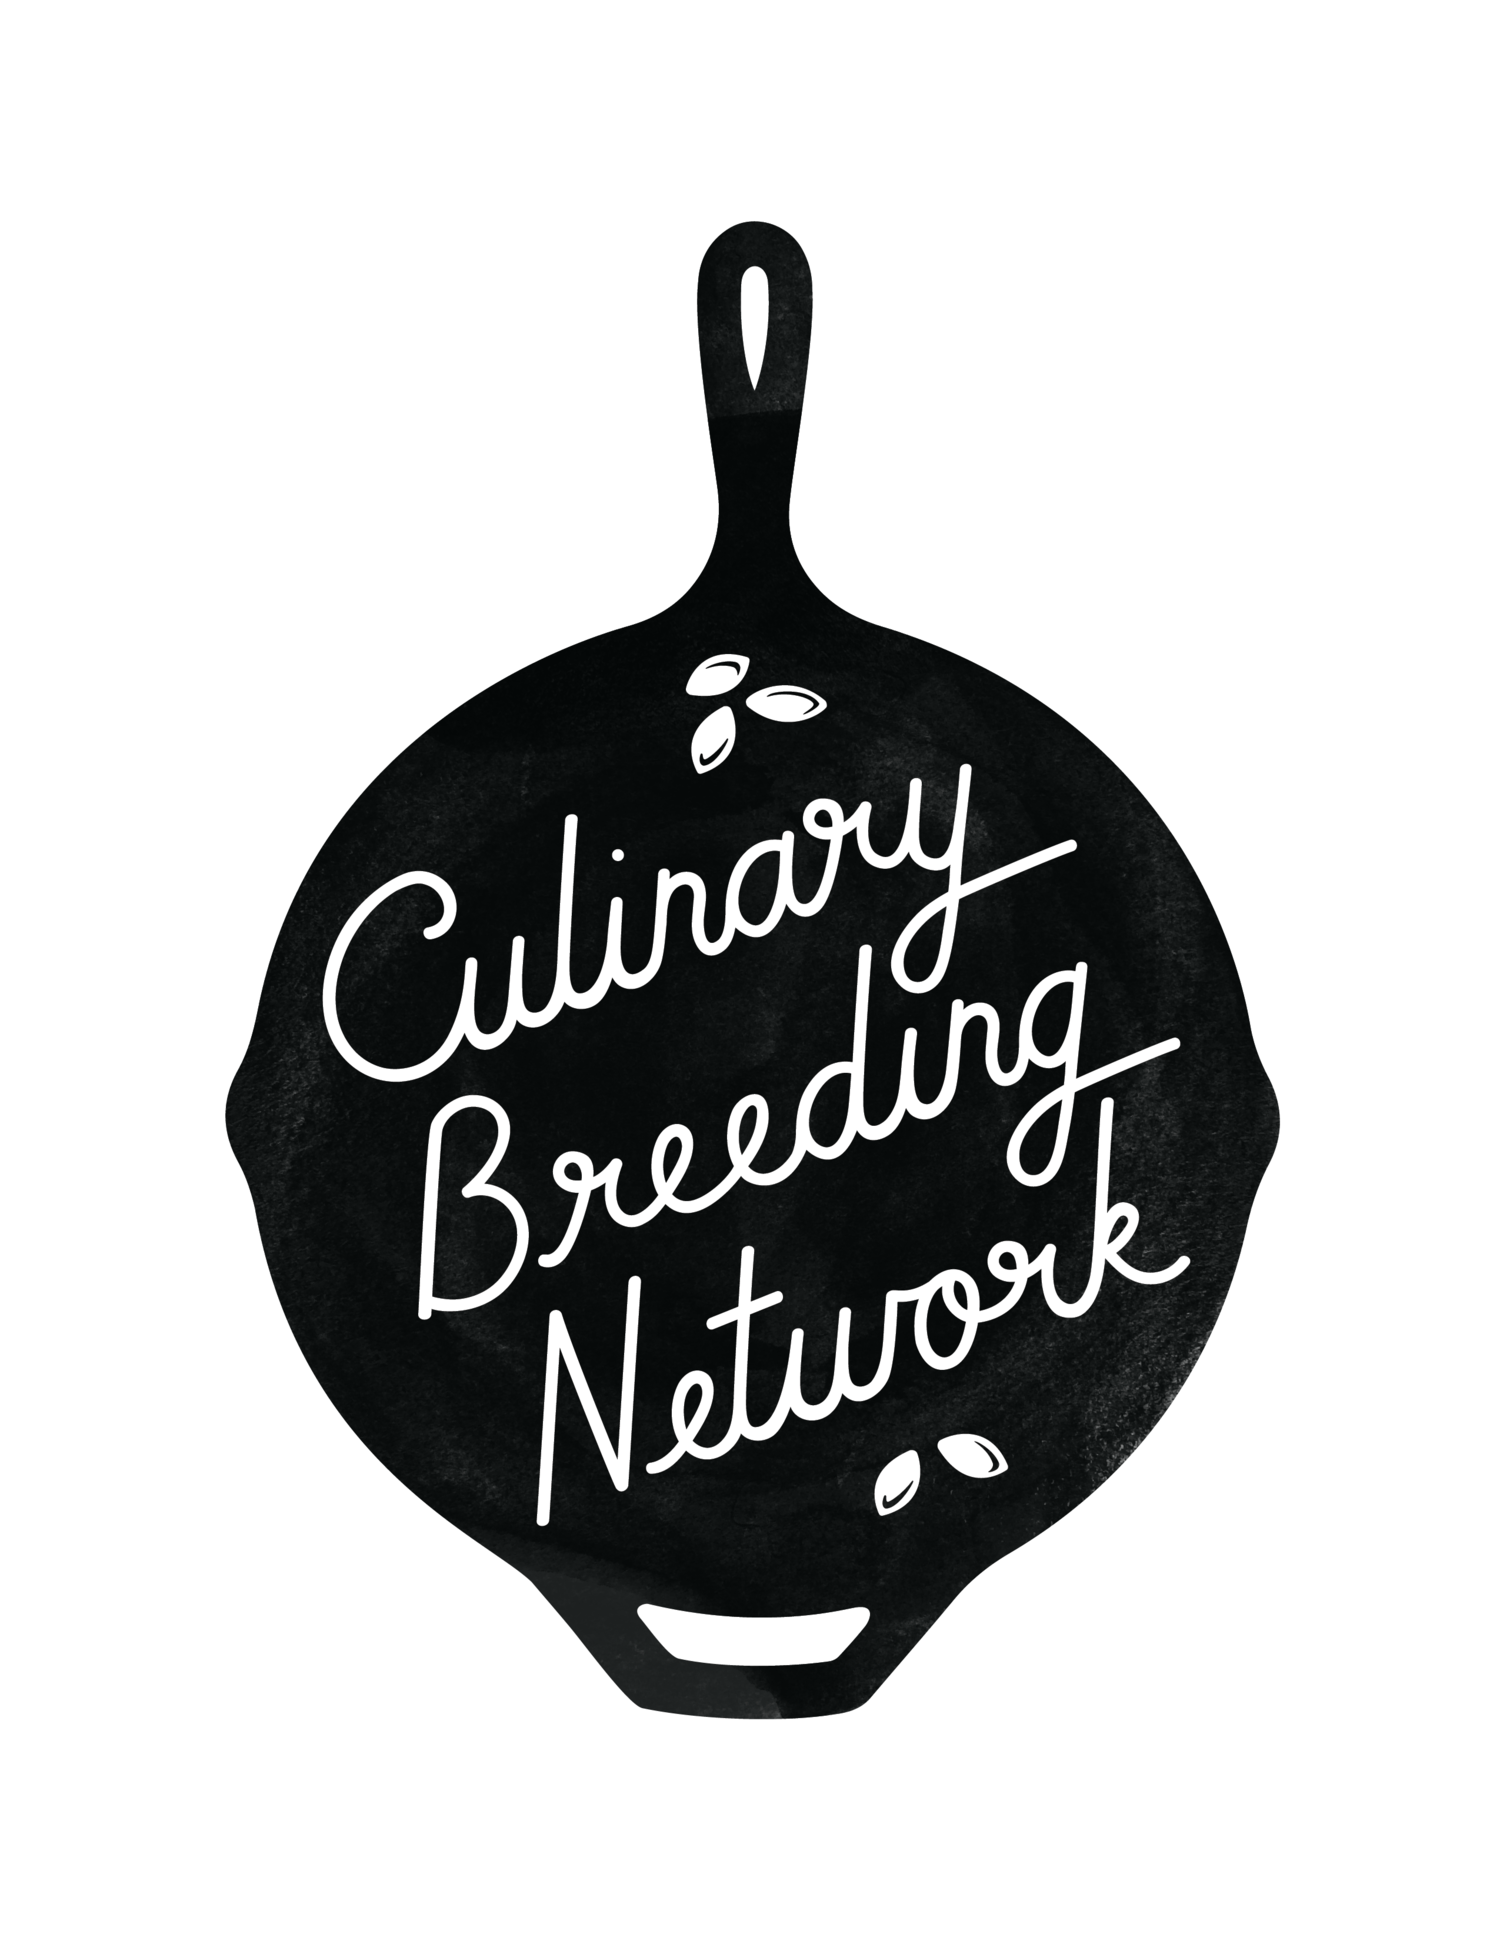 Culinary Breeding Network